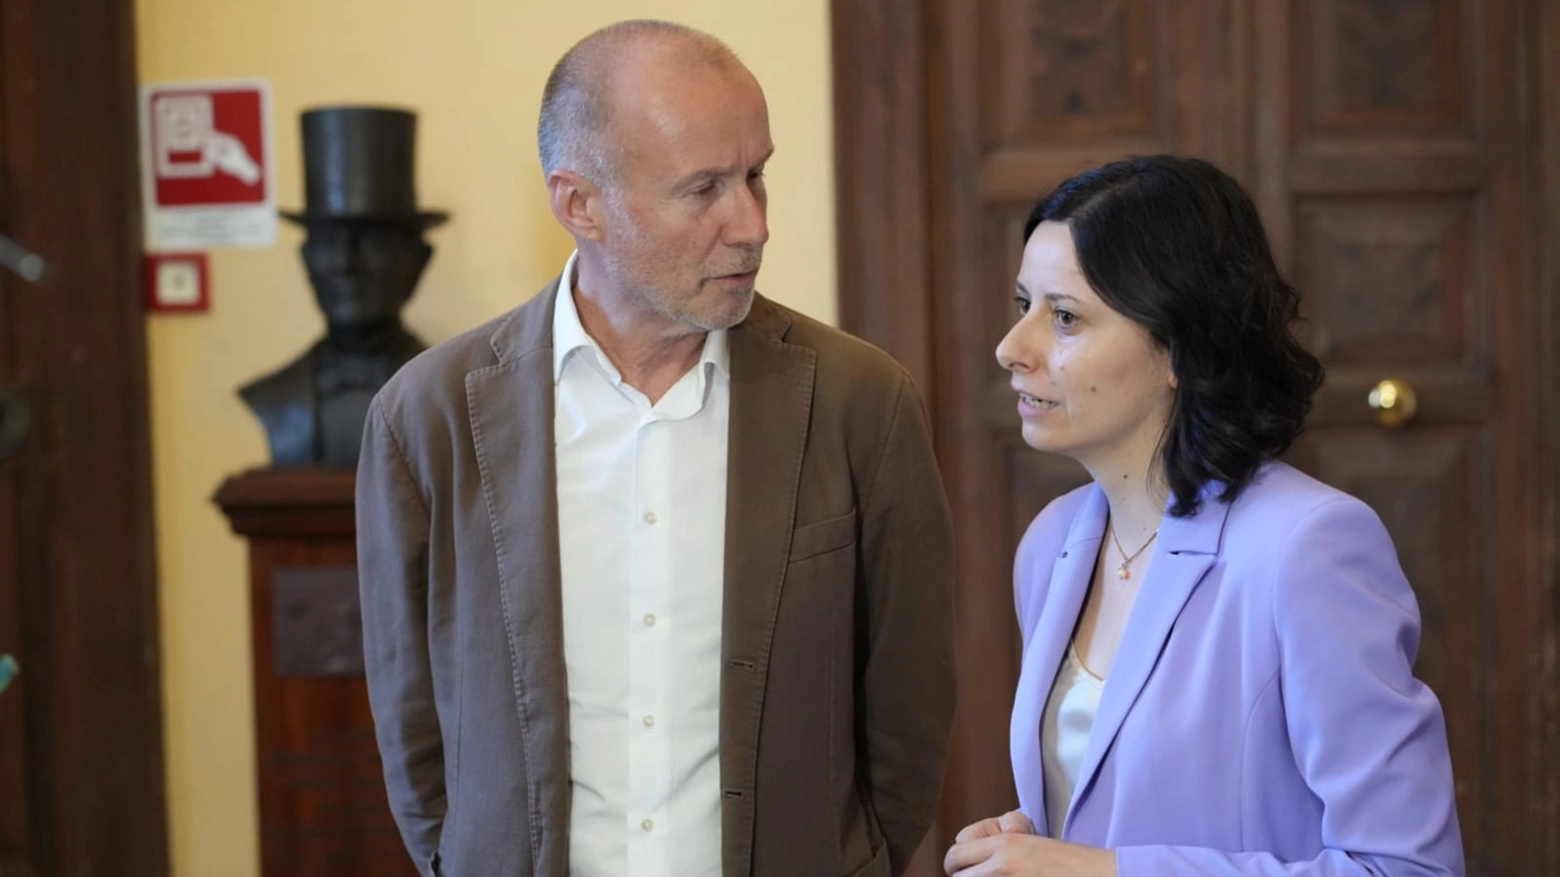 Francesco Pirani e Michela Glorio si contendono la poltrona di sindaco di Osimo al ballottaggio